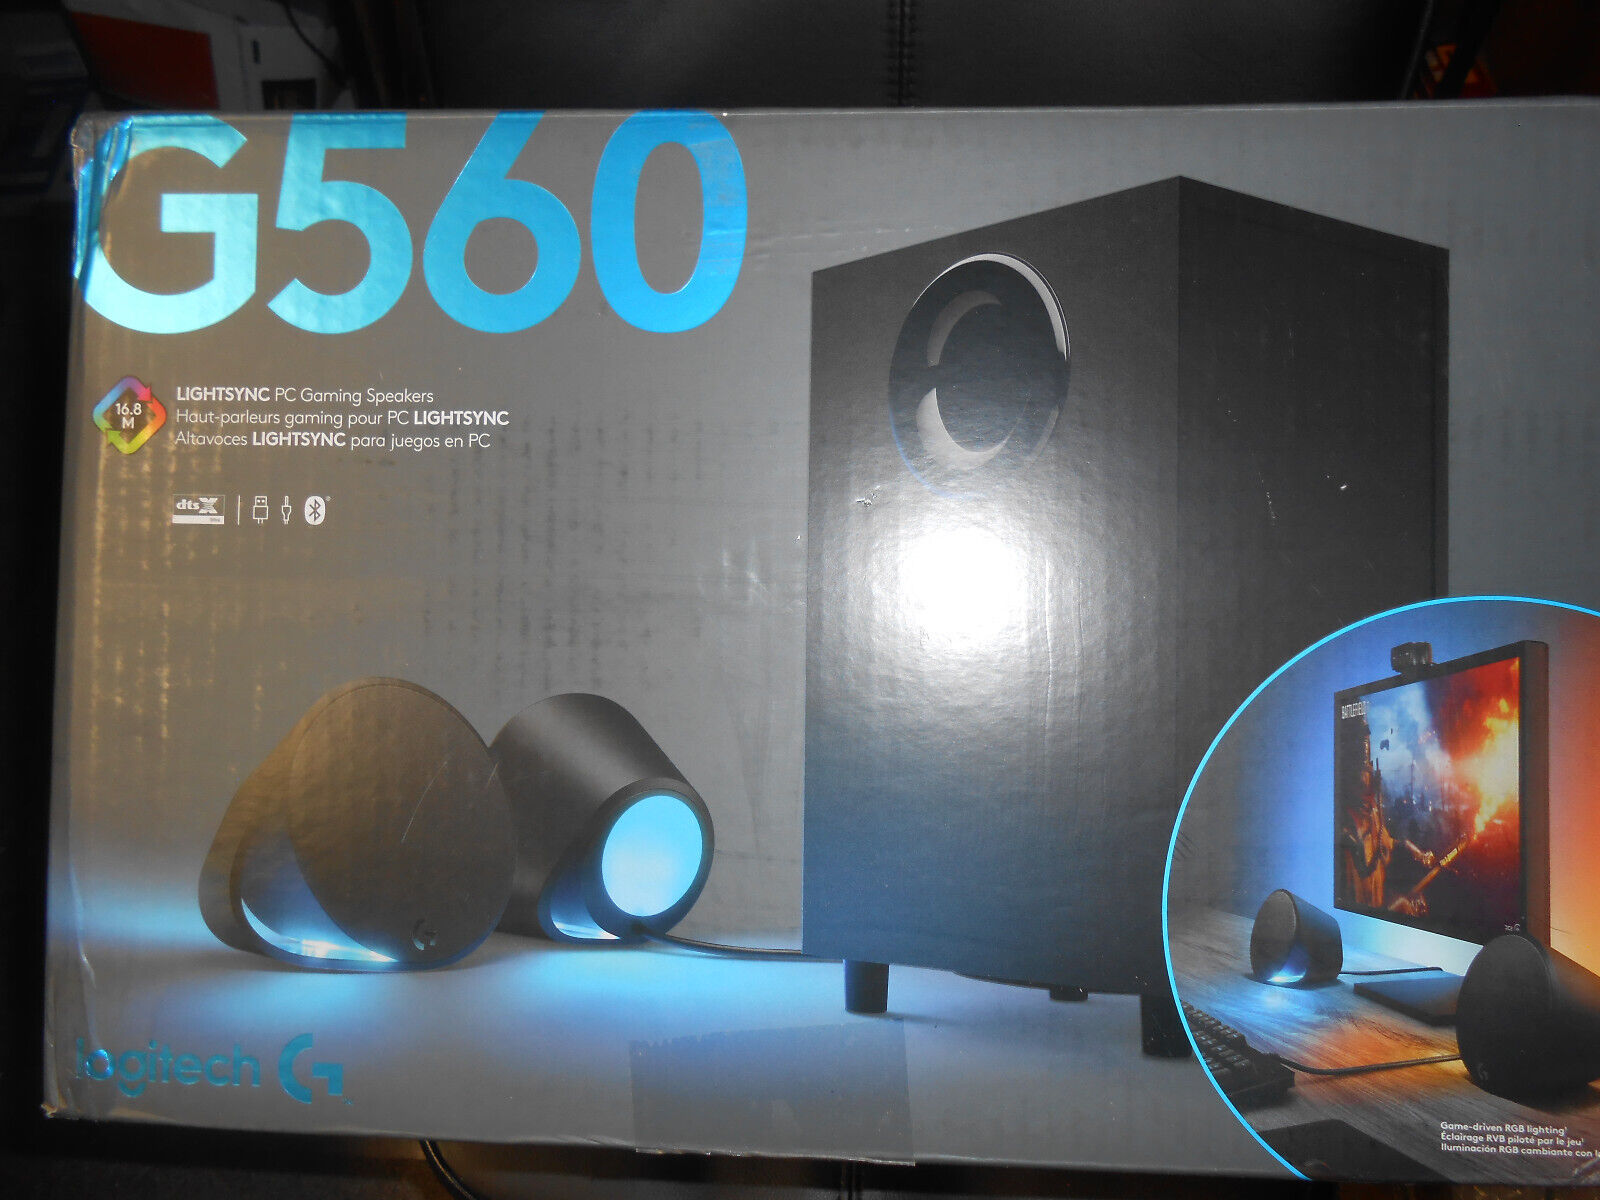 NEW Logitech G560 LIGHTSYNC PC Gaming Speaker System Speakers 980-001300